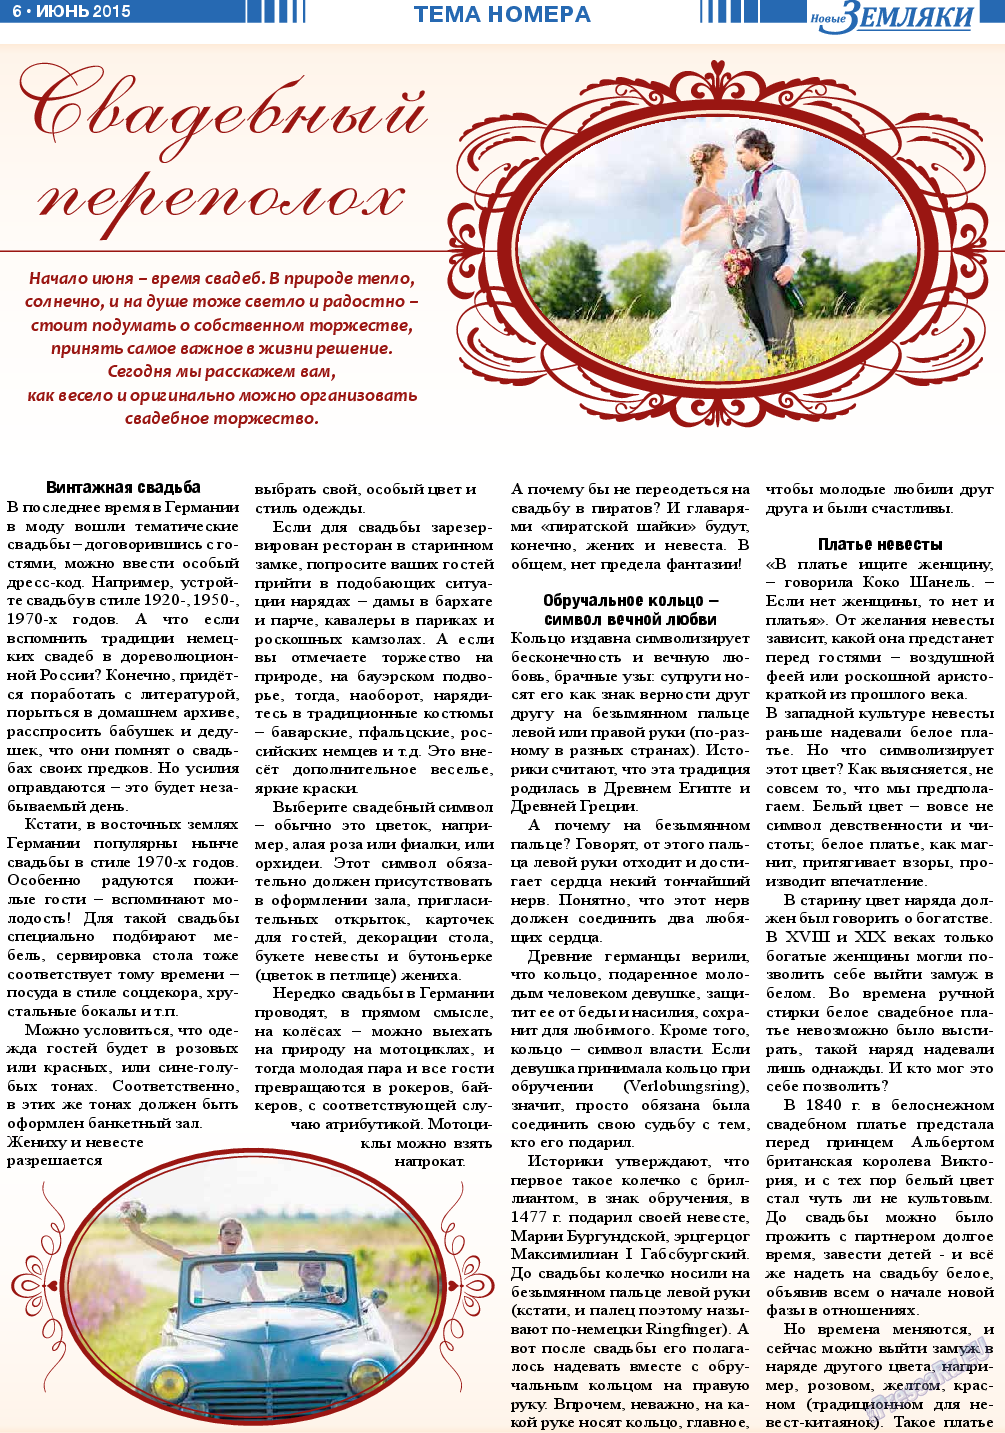 Новые Земляки, газета. 2015 №6 стр.6